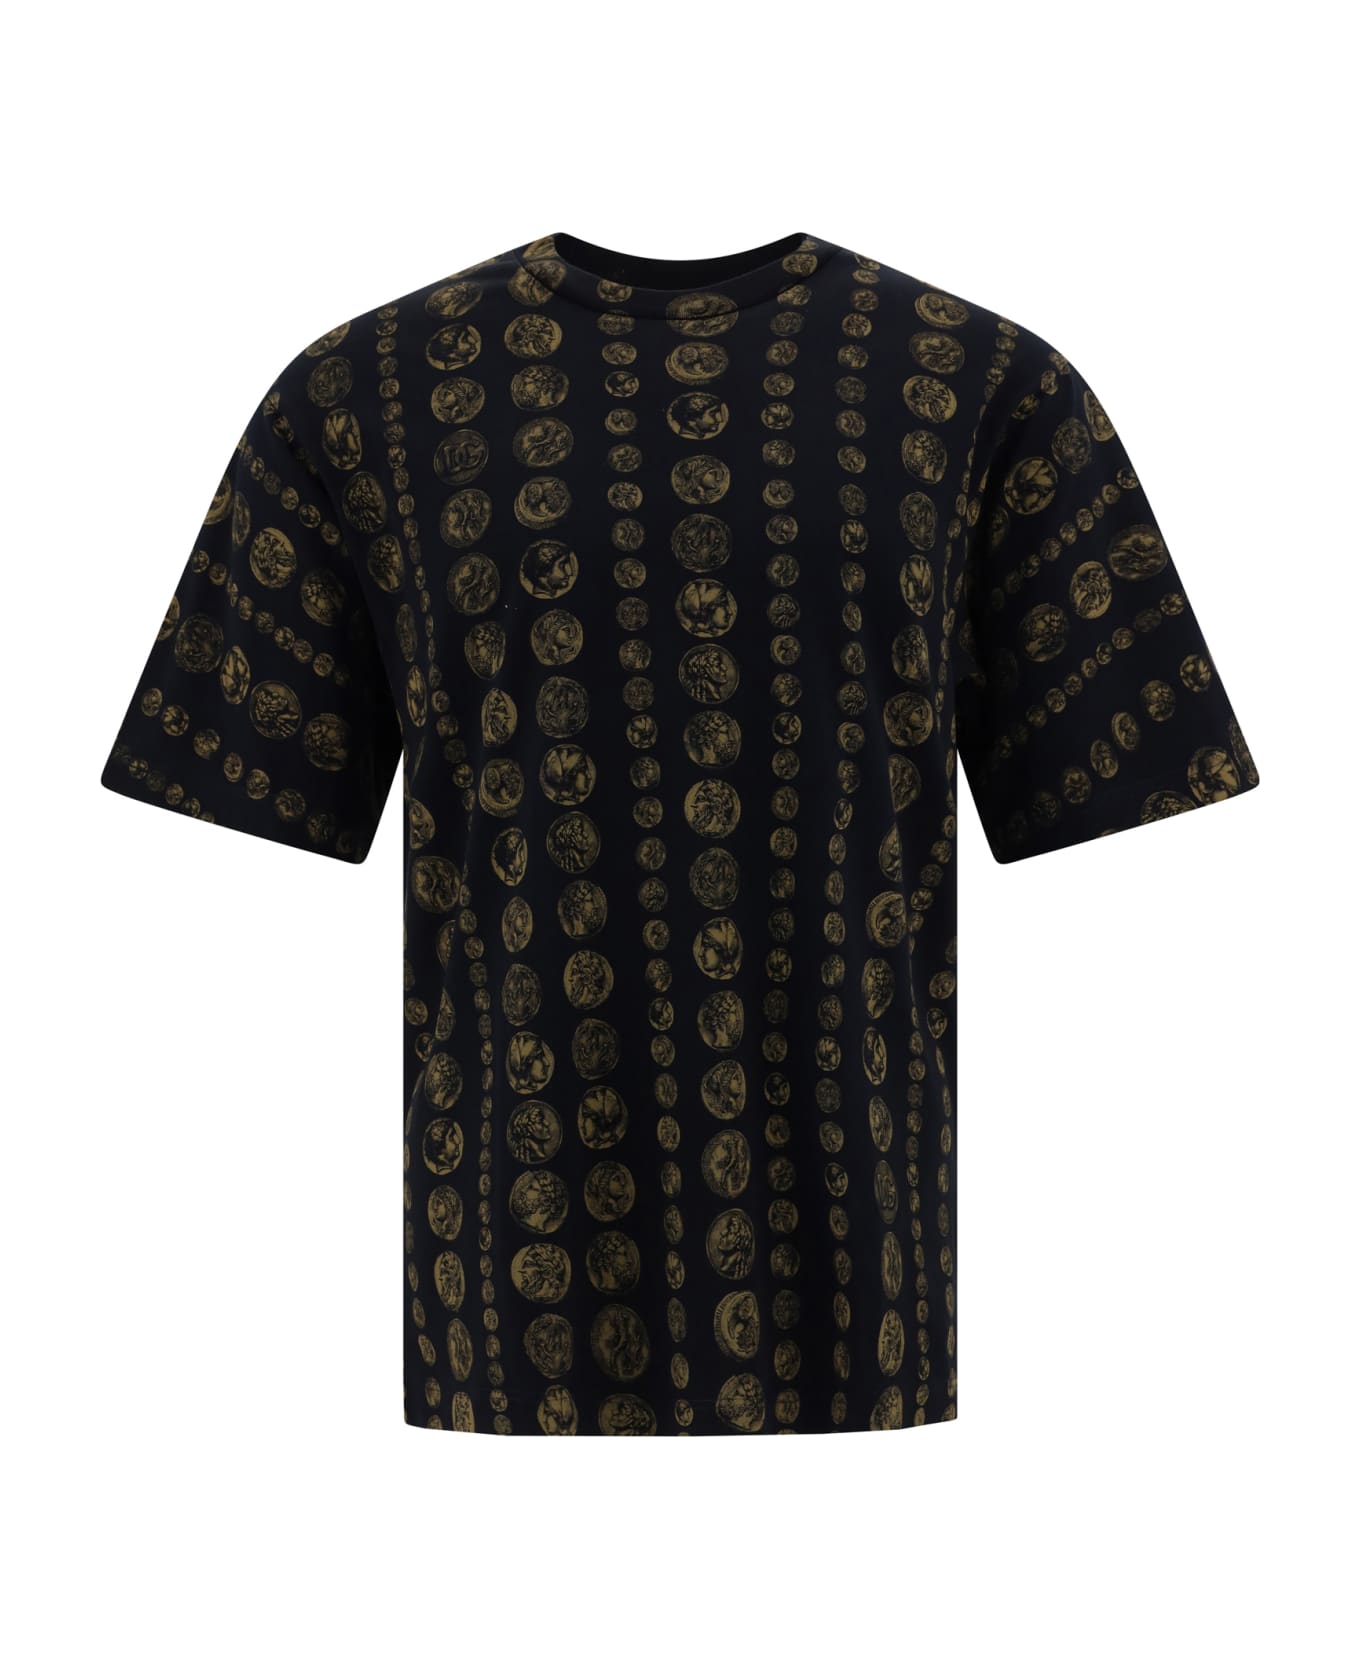 Dolce & Gabbana Allover Coins Print T-shirt - Monete F.do Nero シャツ